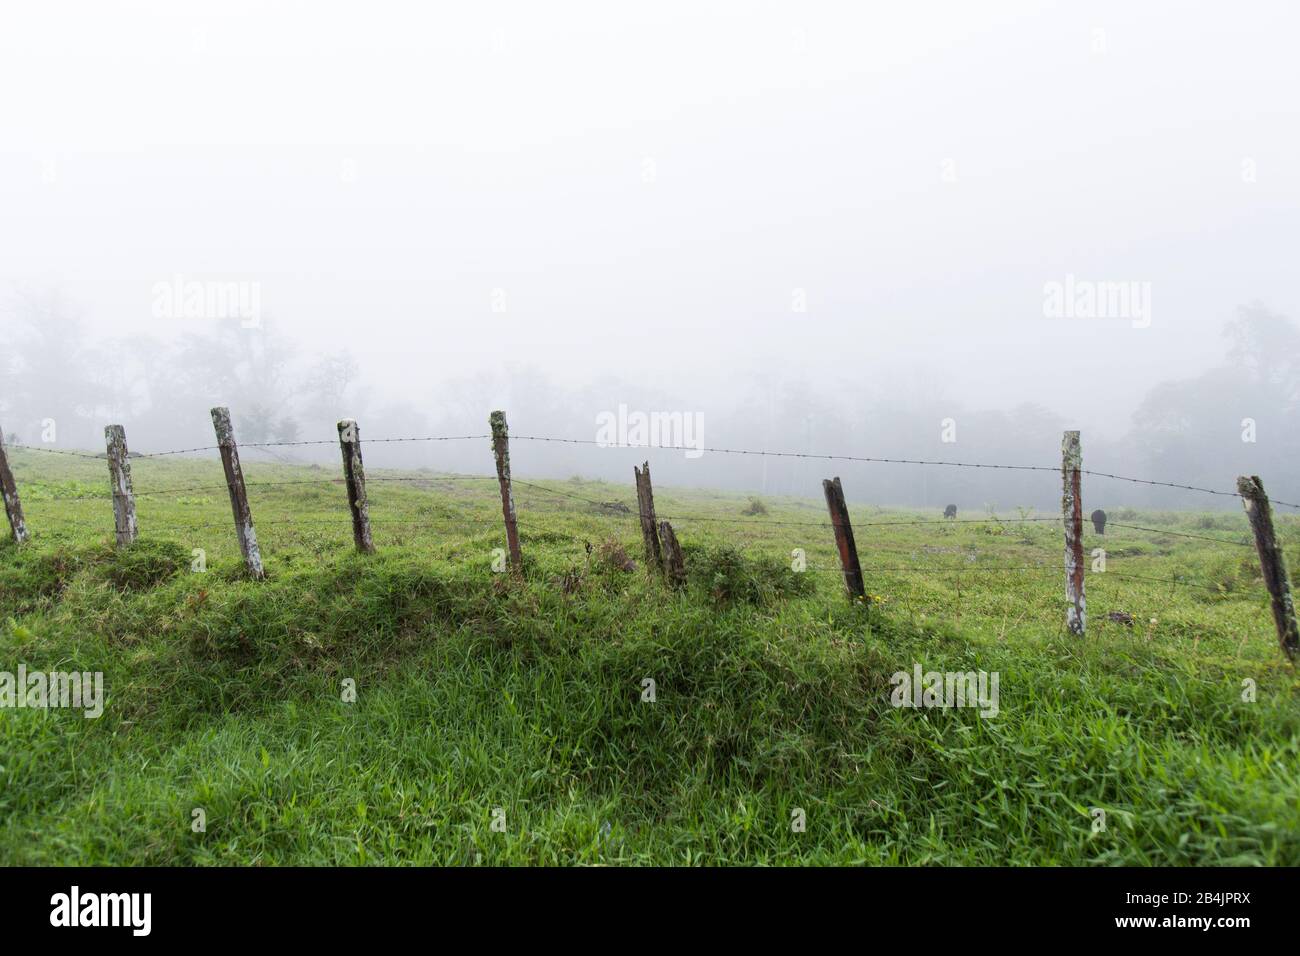 The clouds cover farmland in Costa Rica Stock Photo